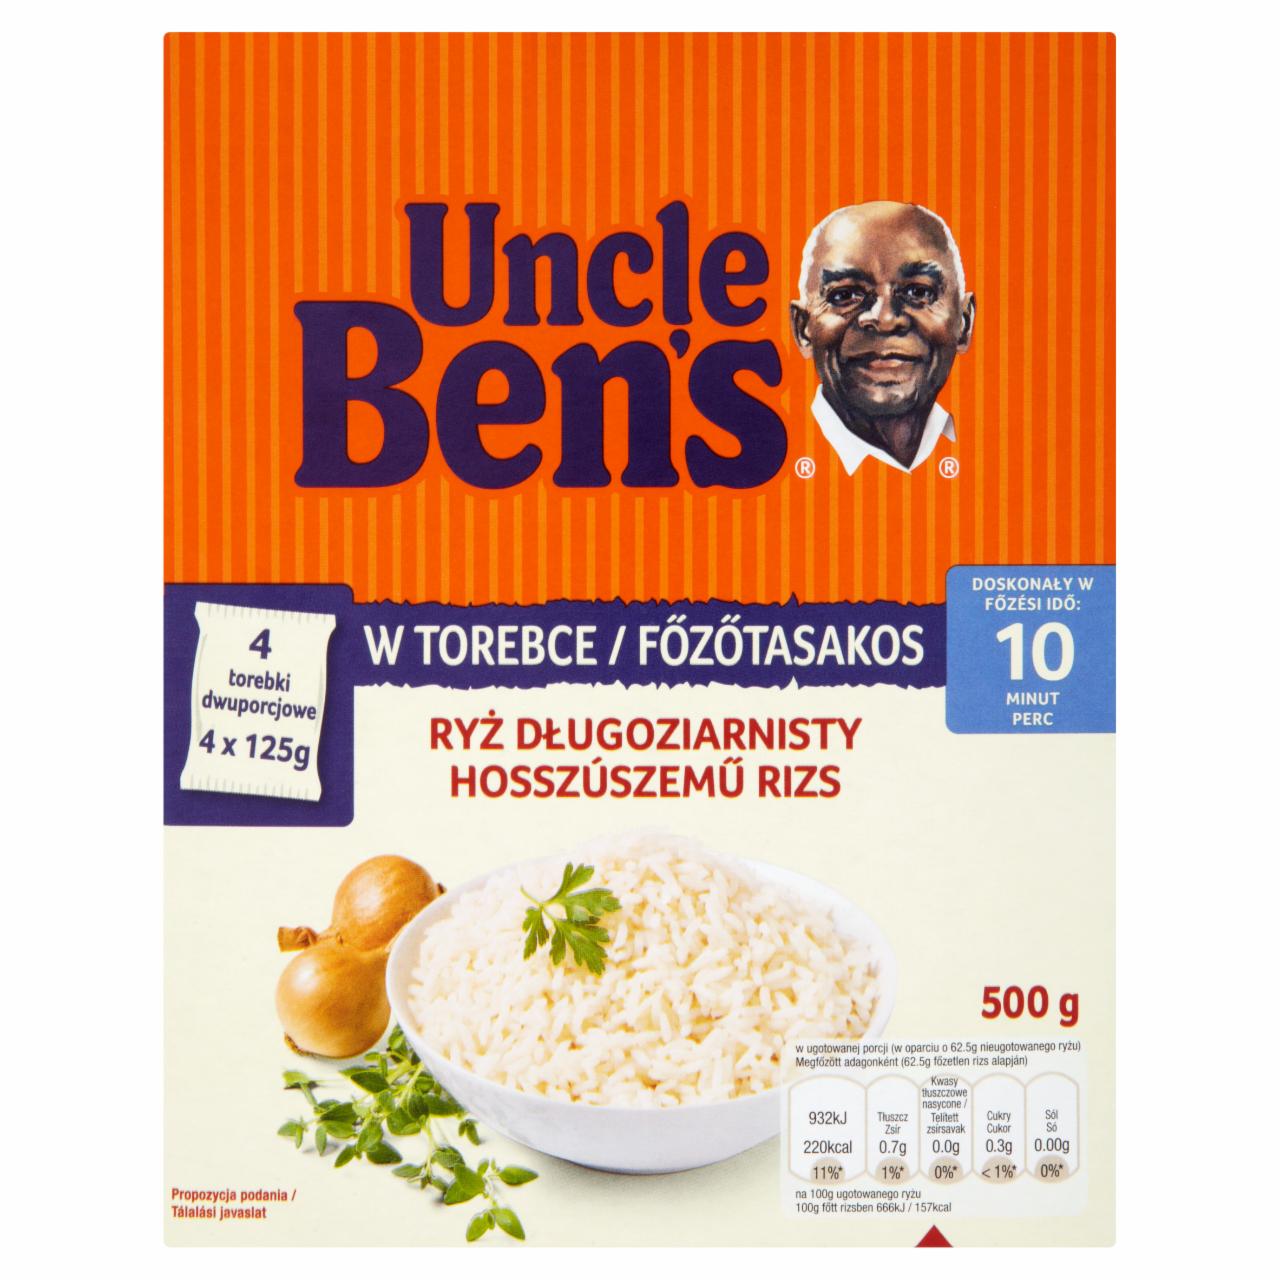 Képek - Uncle Ben's főzőtasakos hosszúszemű rizs 500 g